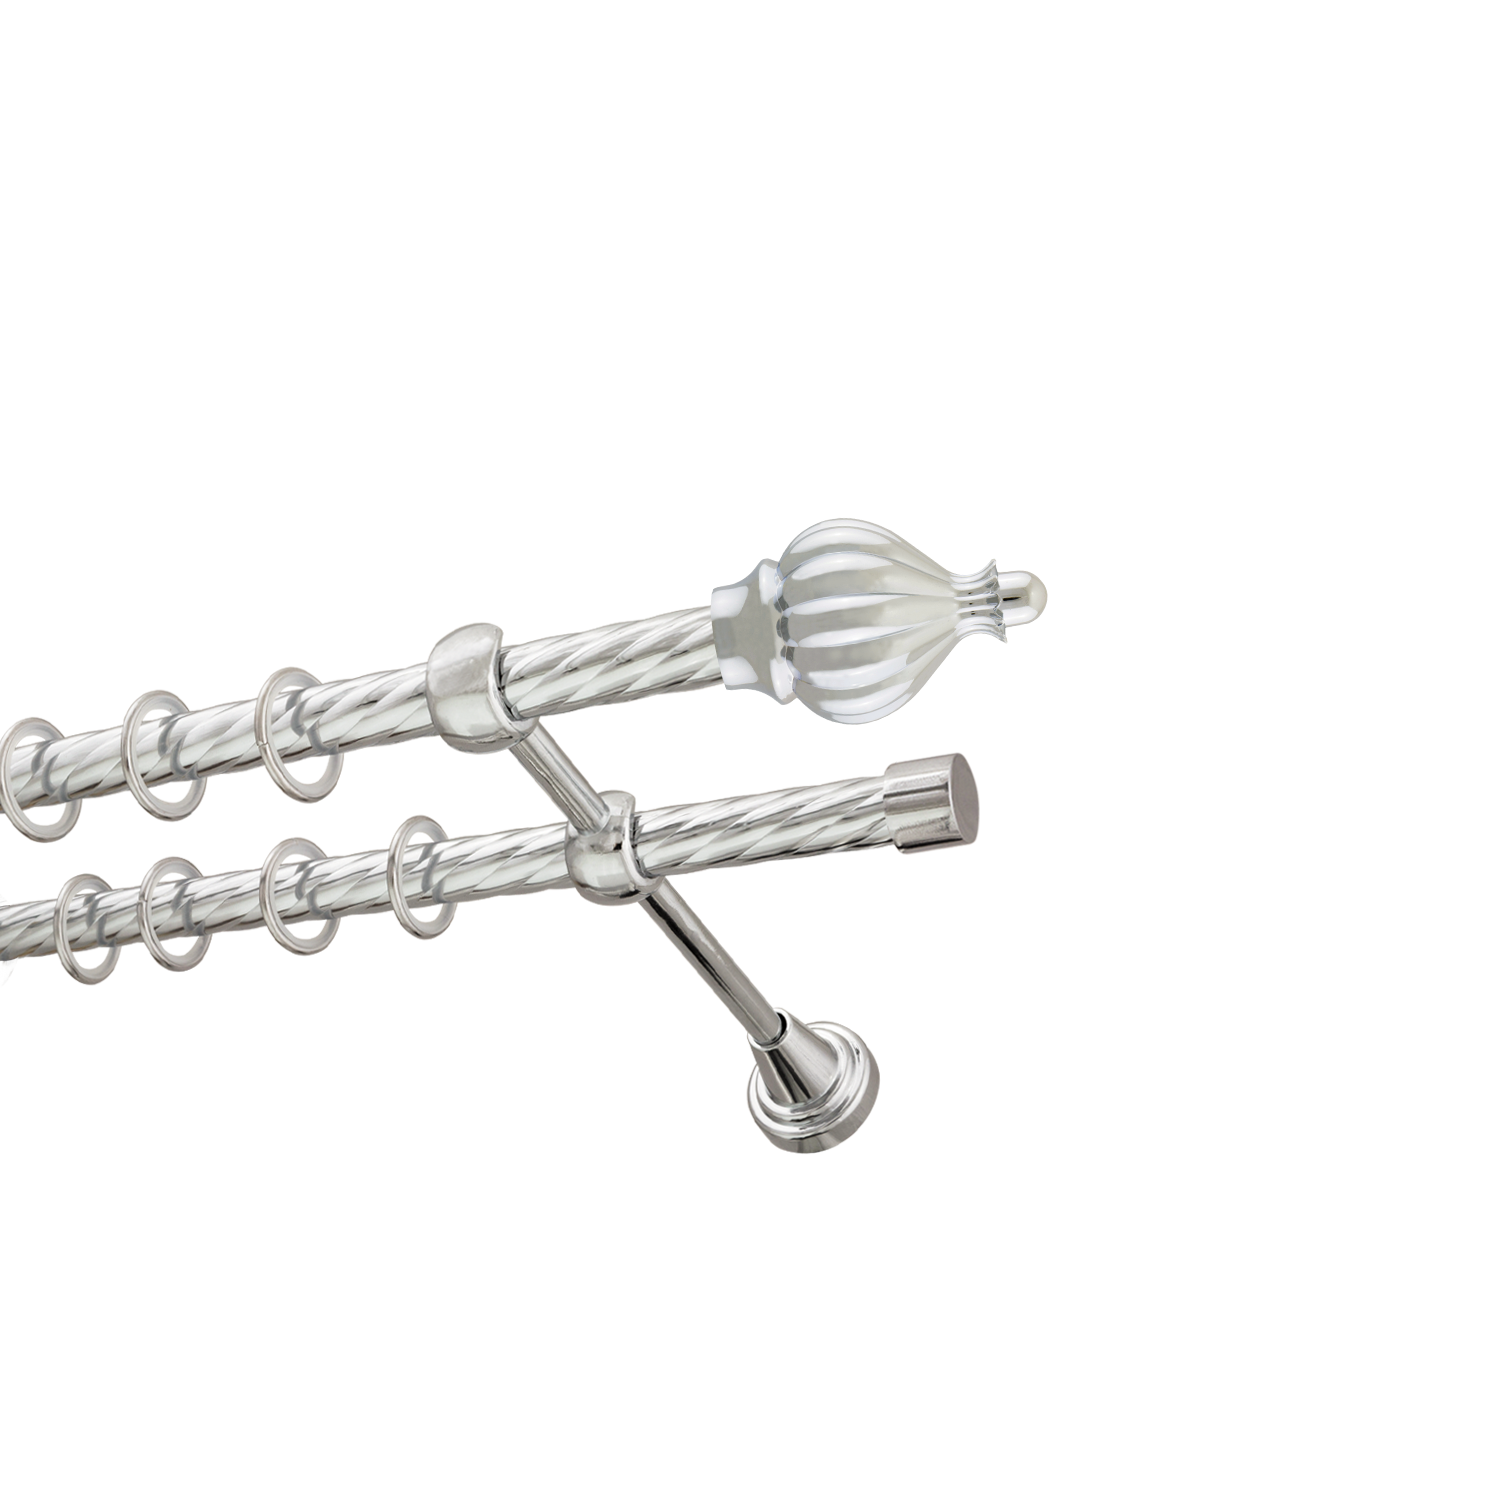 Металлический карниз для штор Афродита, двухрядный 16/16 мм, серебро, витая штанга, длина 240 см